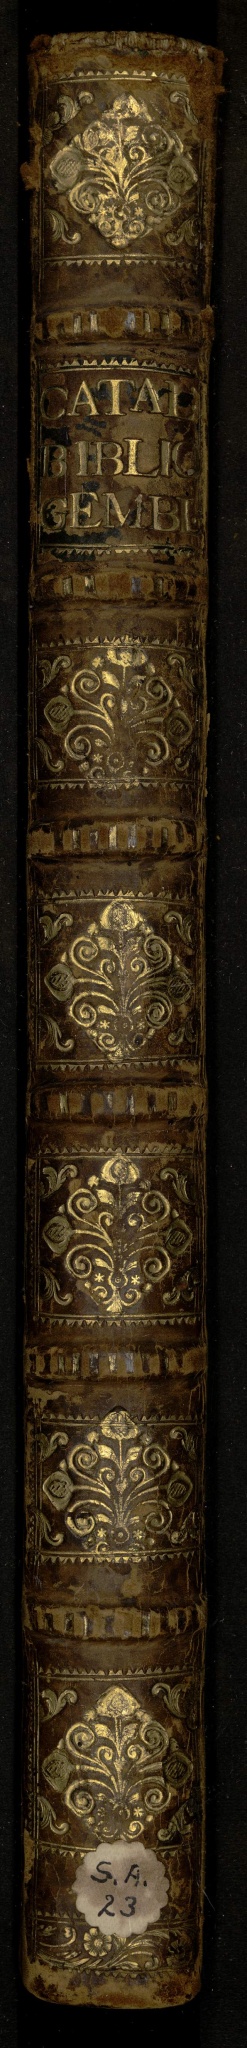 Catalogue de la bibliothèque de l’abbaye de Gembloux